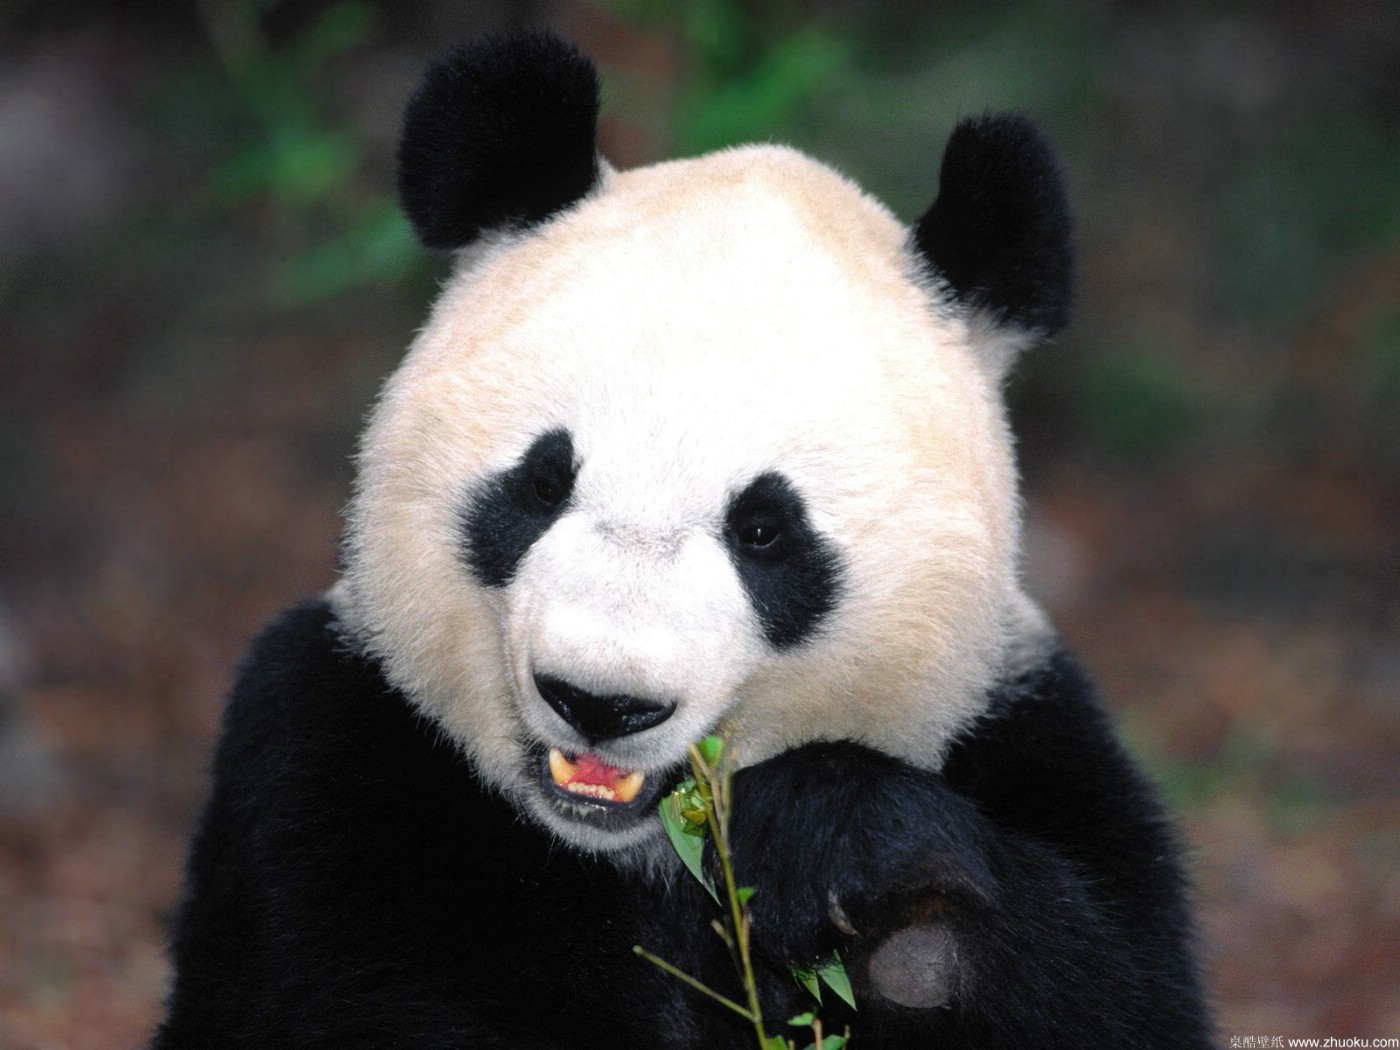 壁纸1400×1050可爱国宝 大熊猫高清晰壁纸壁纸,可爱国宝！大熊猫高清晰壁纸壁纸图片动物壁纸动物图片素材桌面壁纸